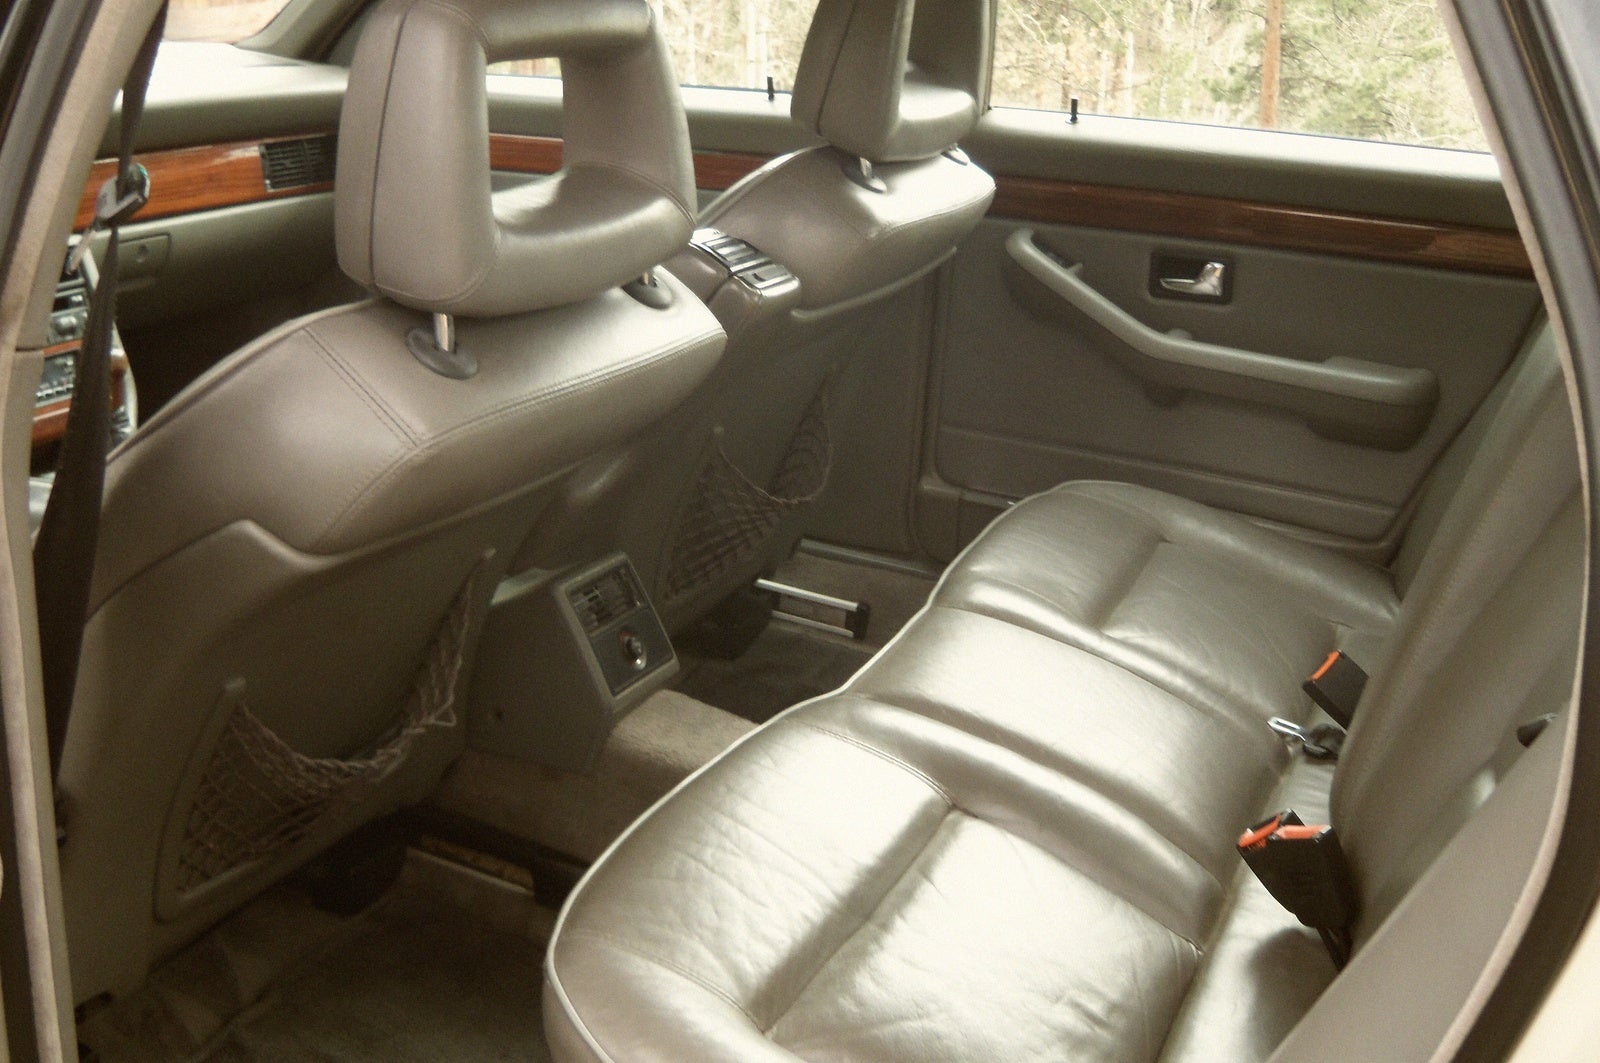 1991 Audi 100 - Interior Pictures - CarGurus